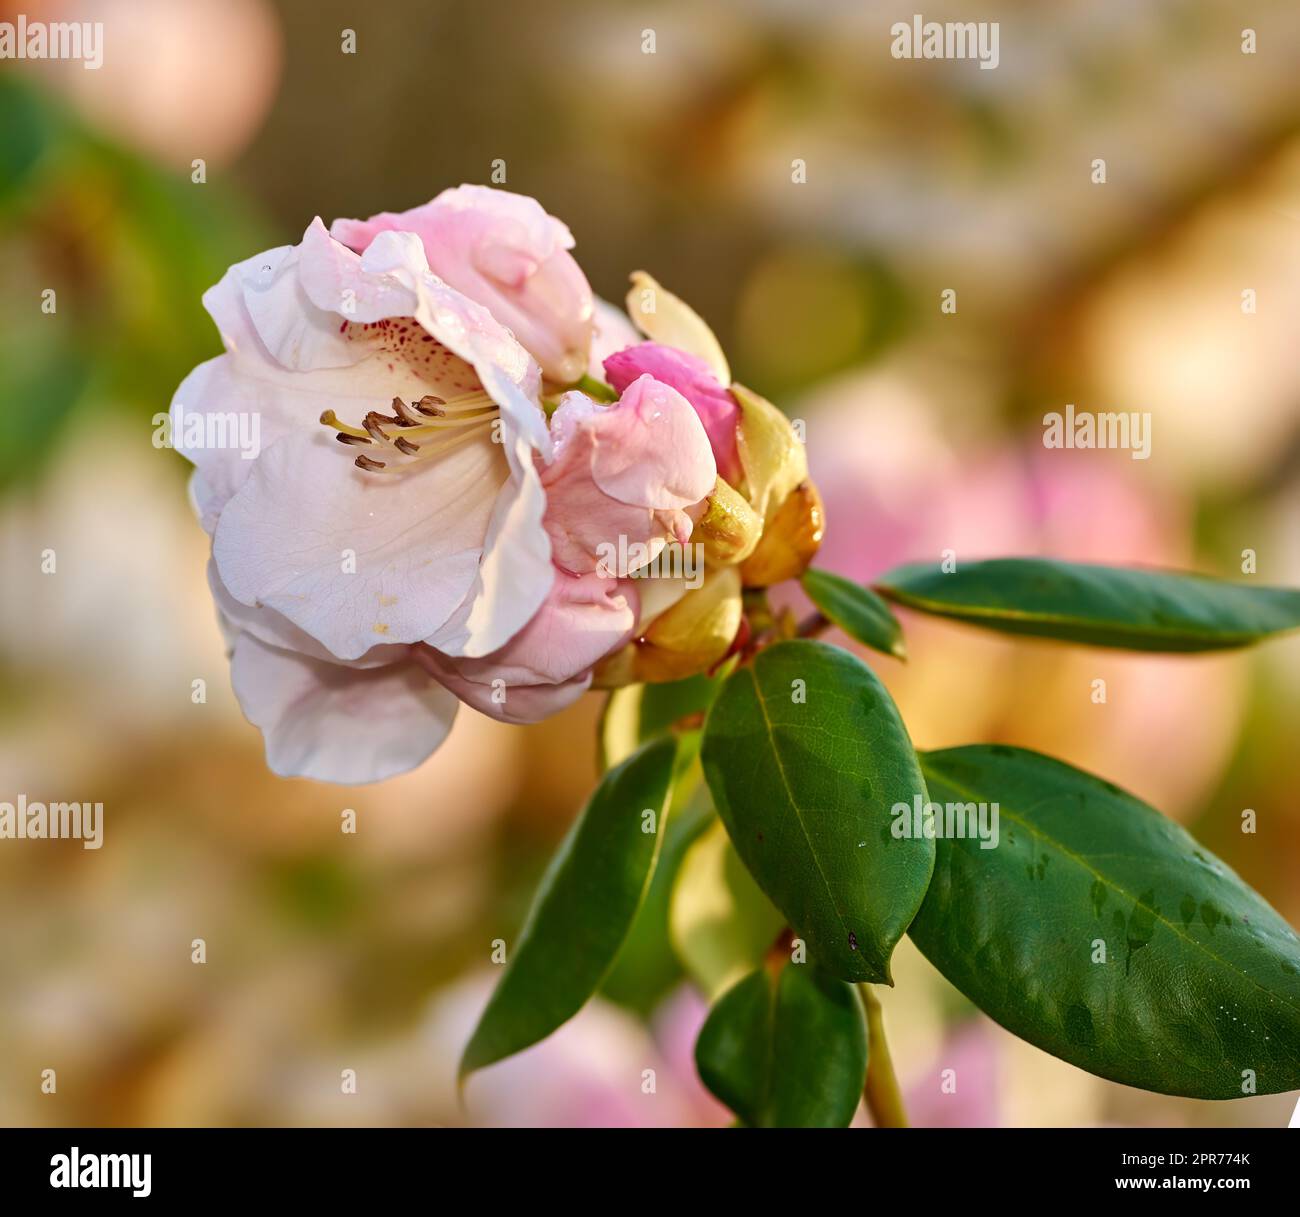 Rhododendron, genre de nombreuses espèces de plantes ligneuses de la famille de la santé. Evergreen ou feuillus, que l'on trouve principalement en Asie, mais aussi dans les hautes-terres méridionales des Appalaches d'Amérique du Nord Banque D'Images